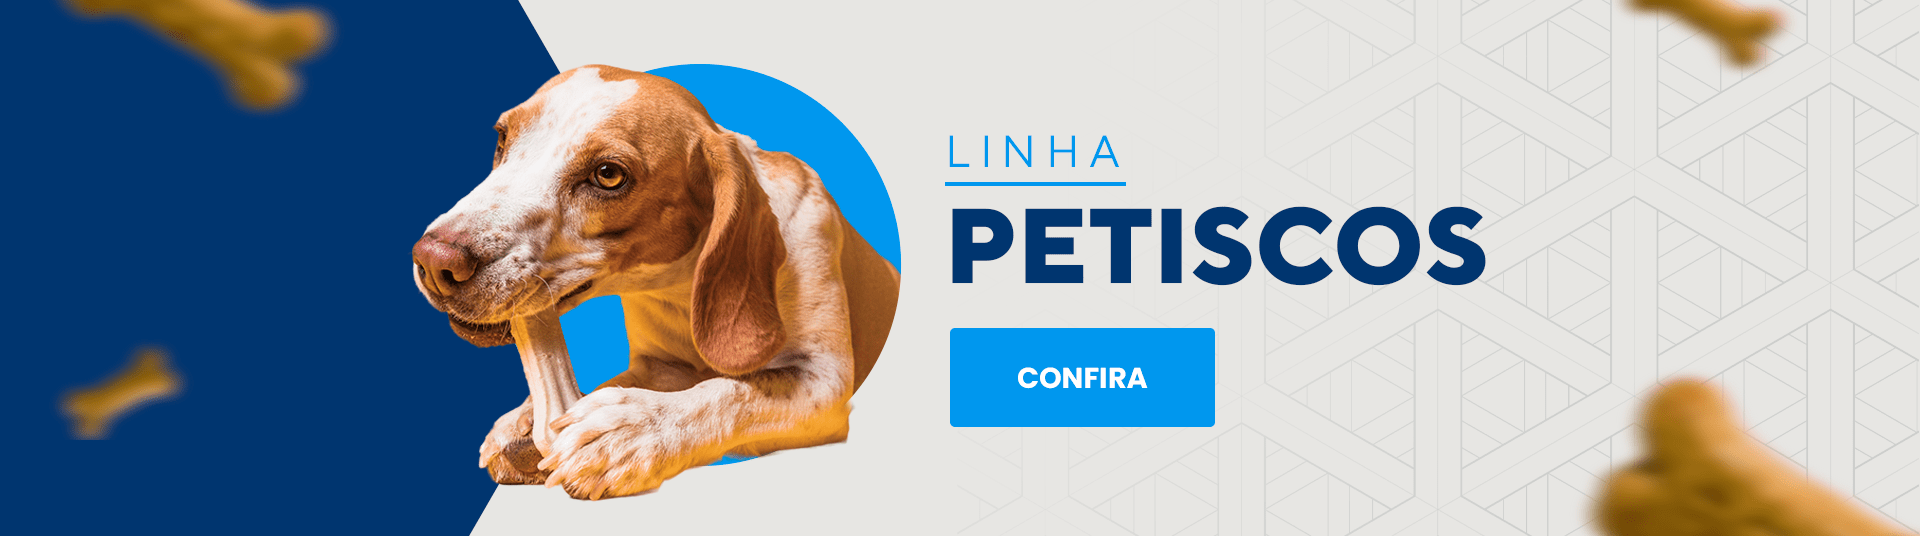 Lingha Petiscos